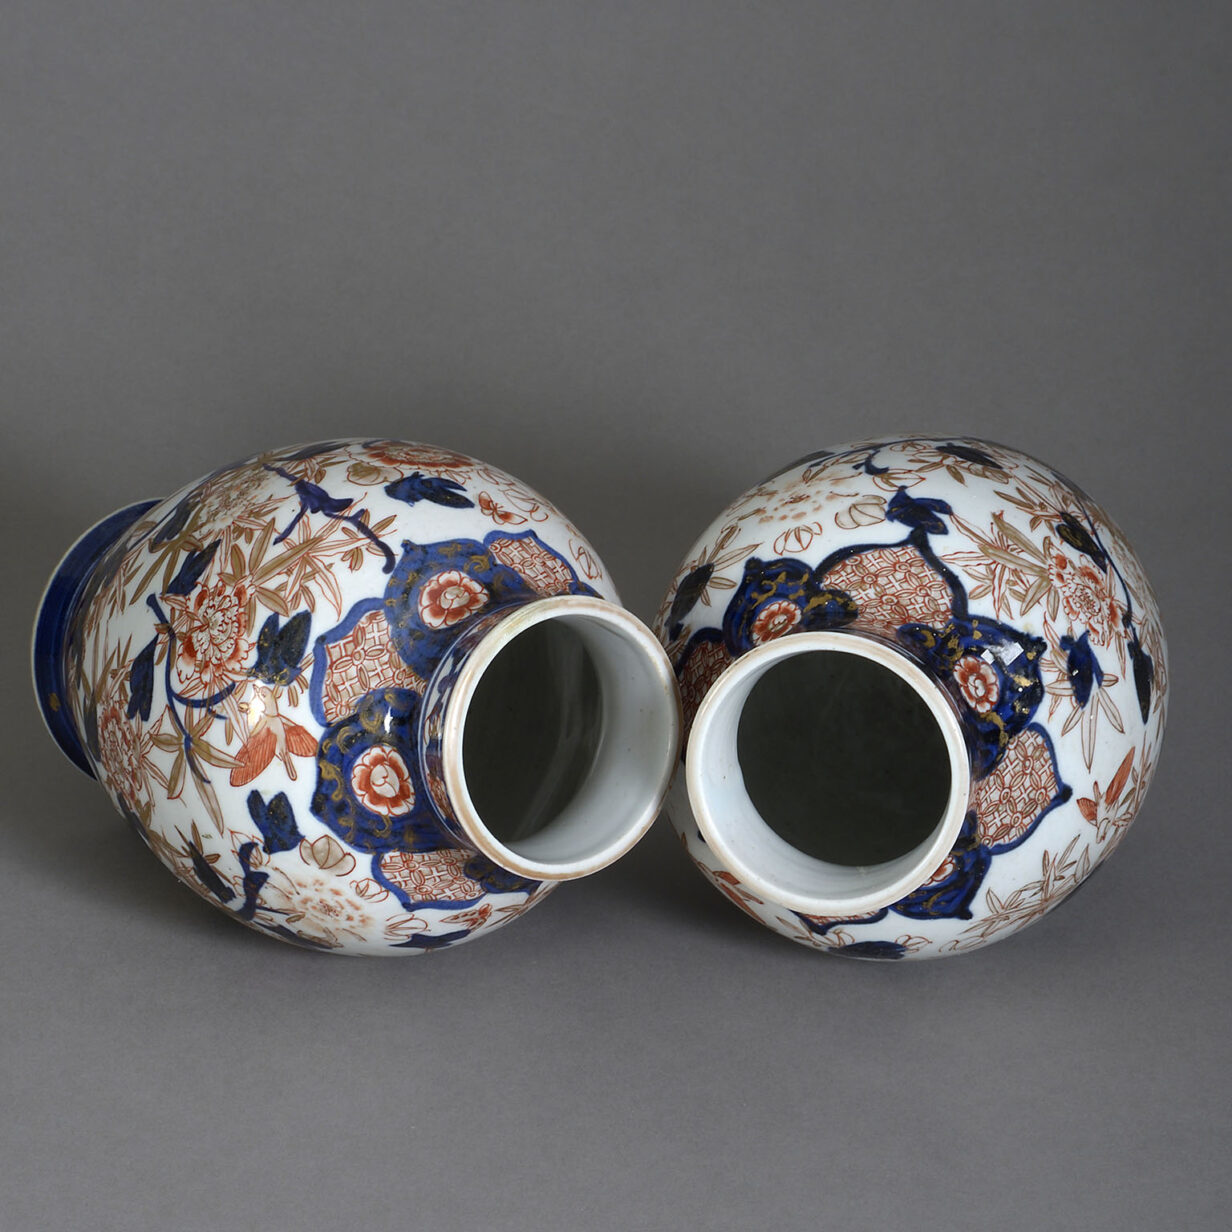 Pair of late 19th century meiji period imari porcelain vases